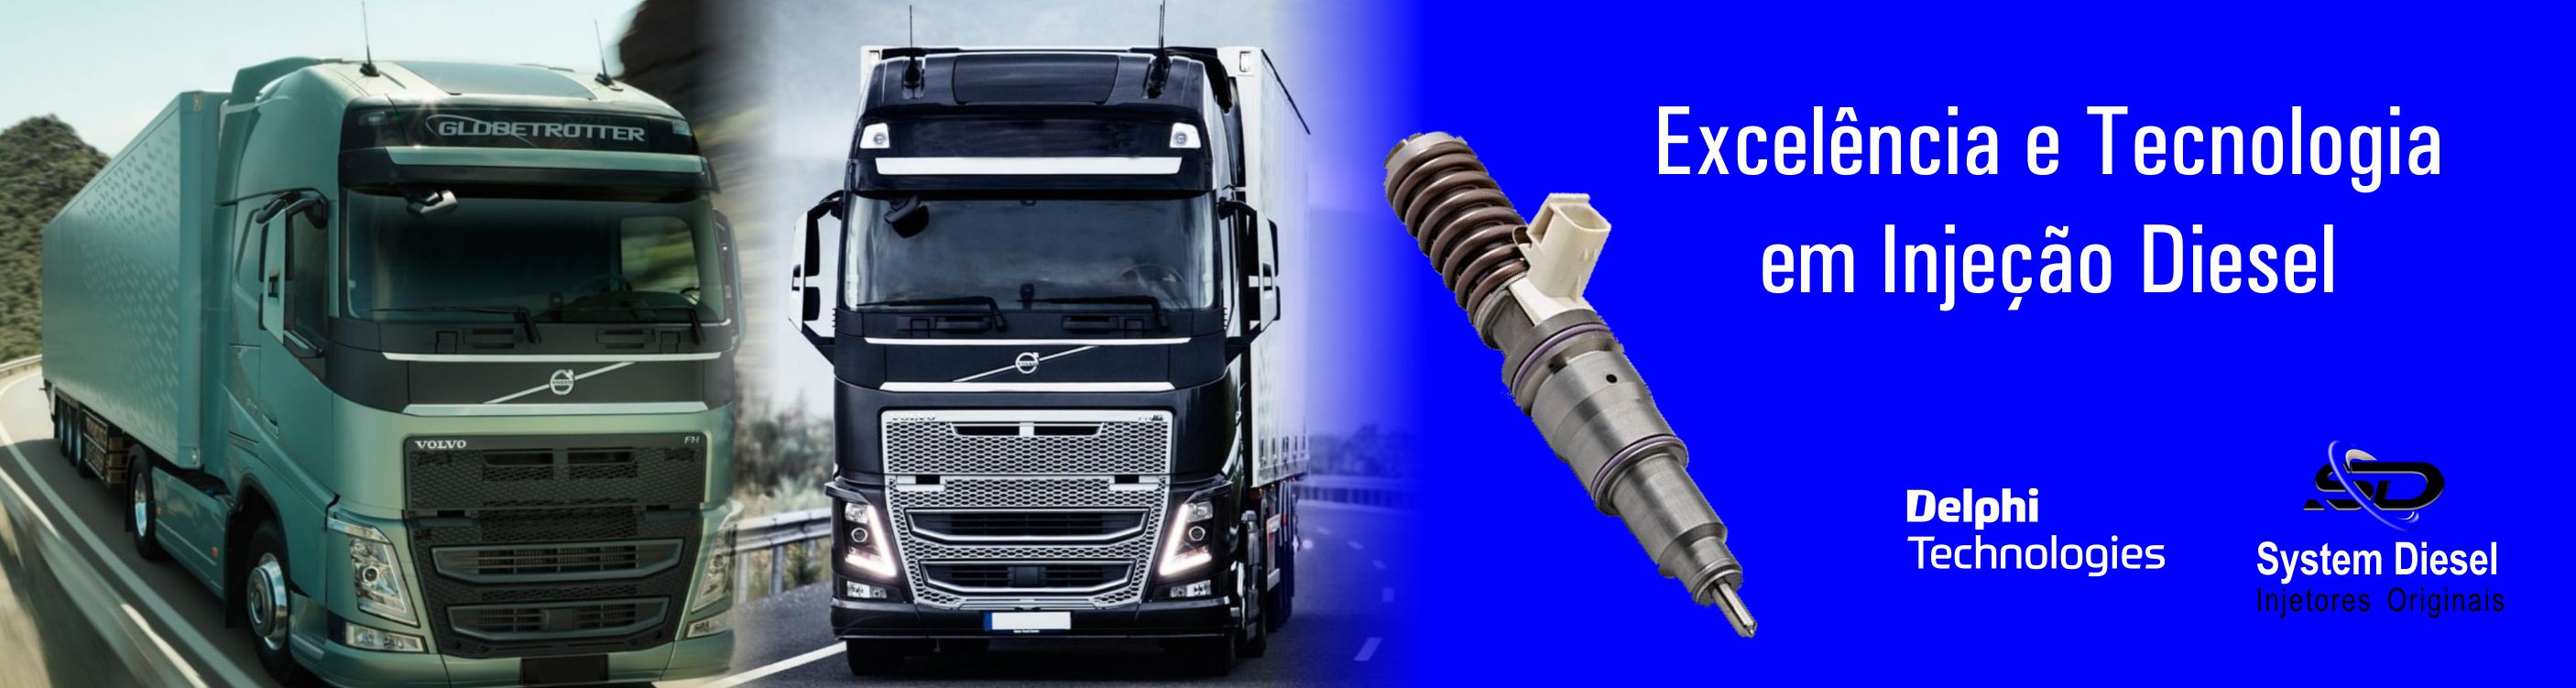 system diesel - Escelência e Tecnologia em Injeção Diesel Delphi